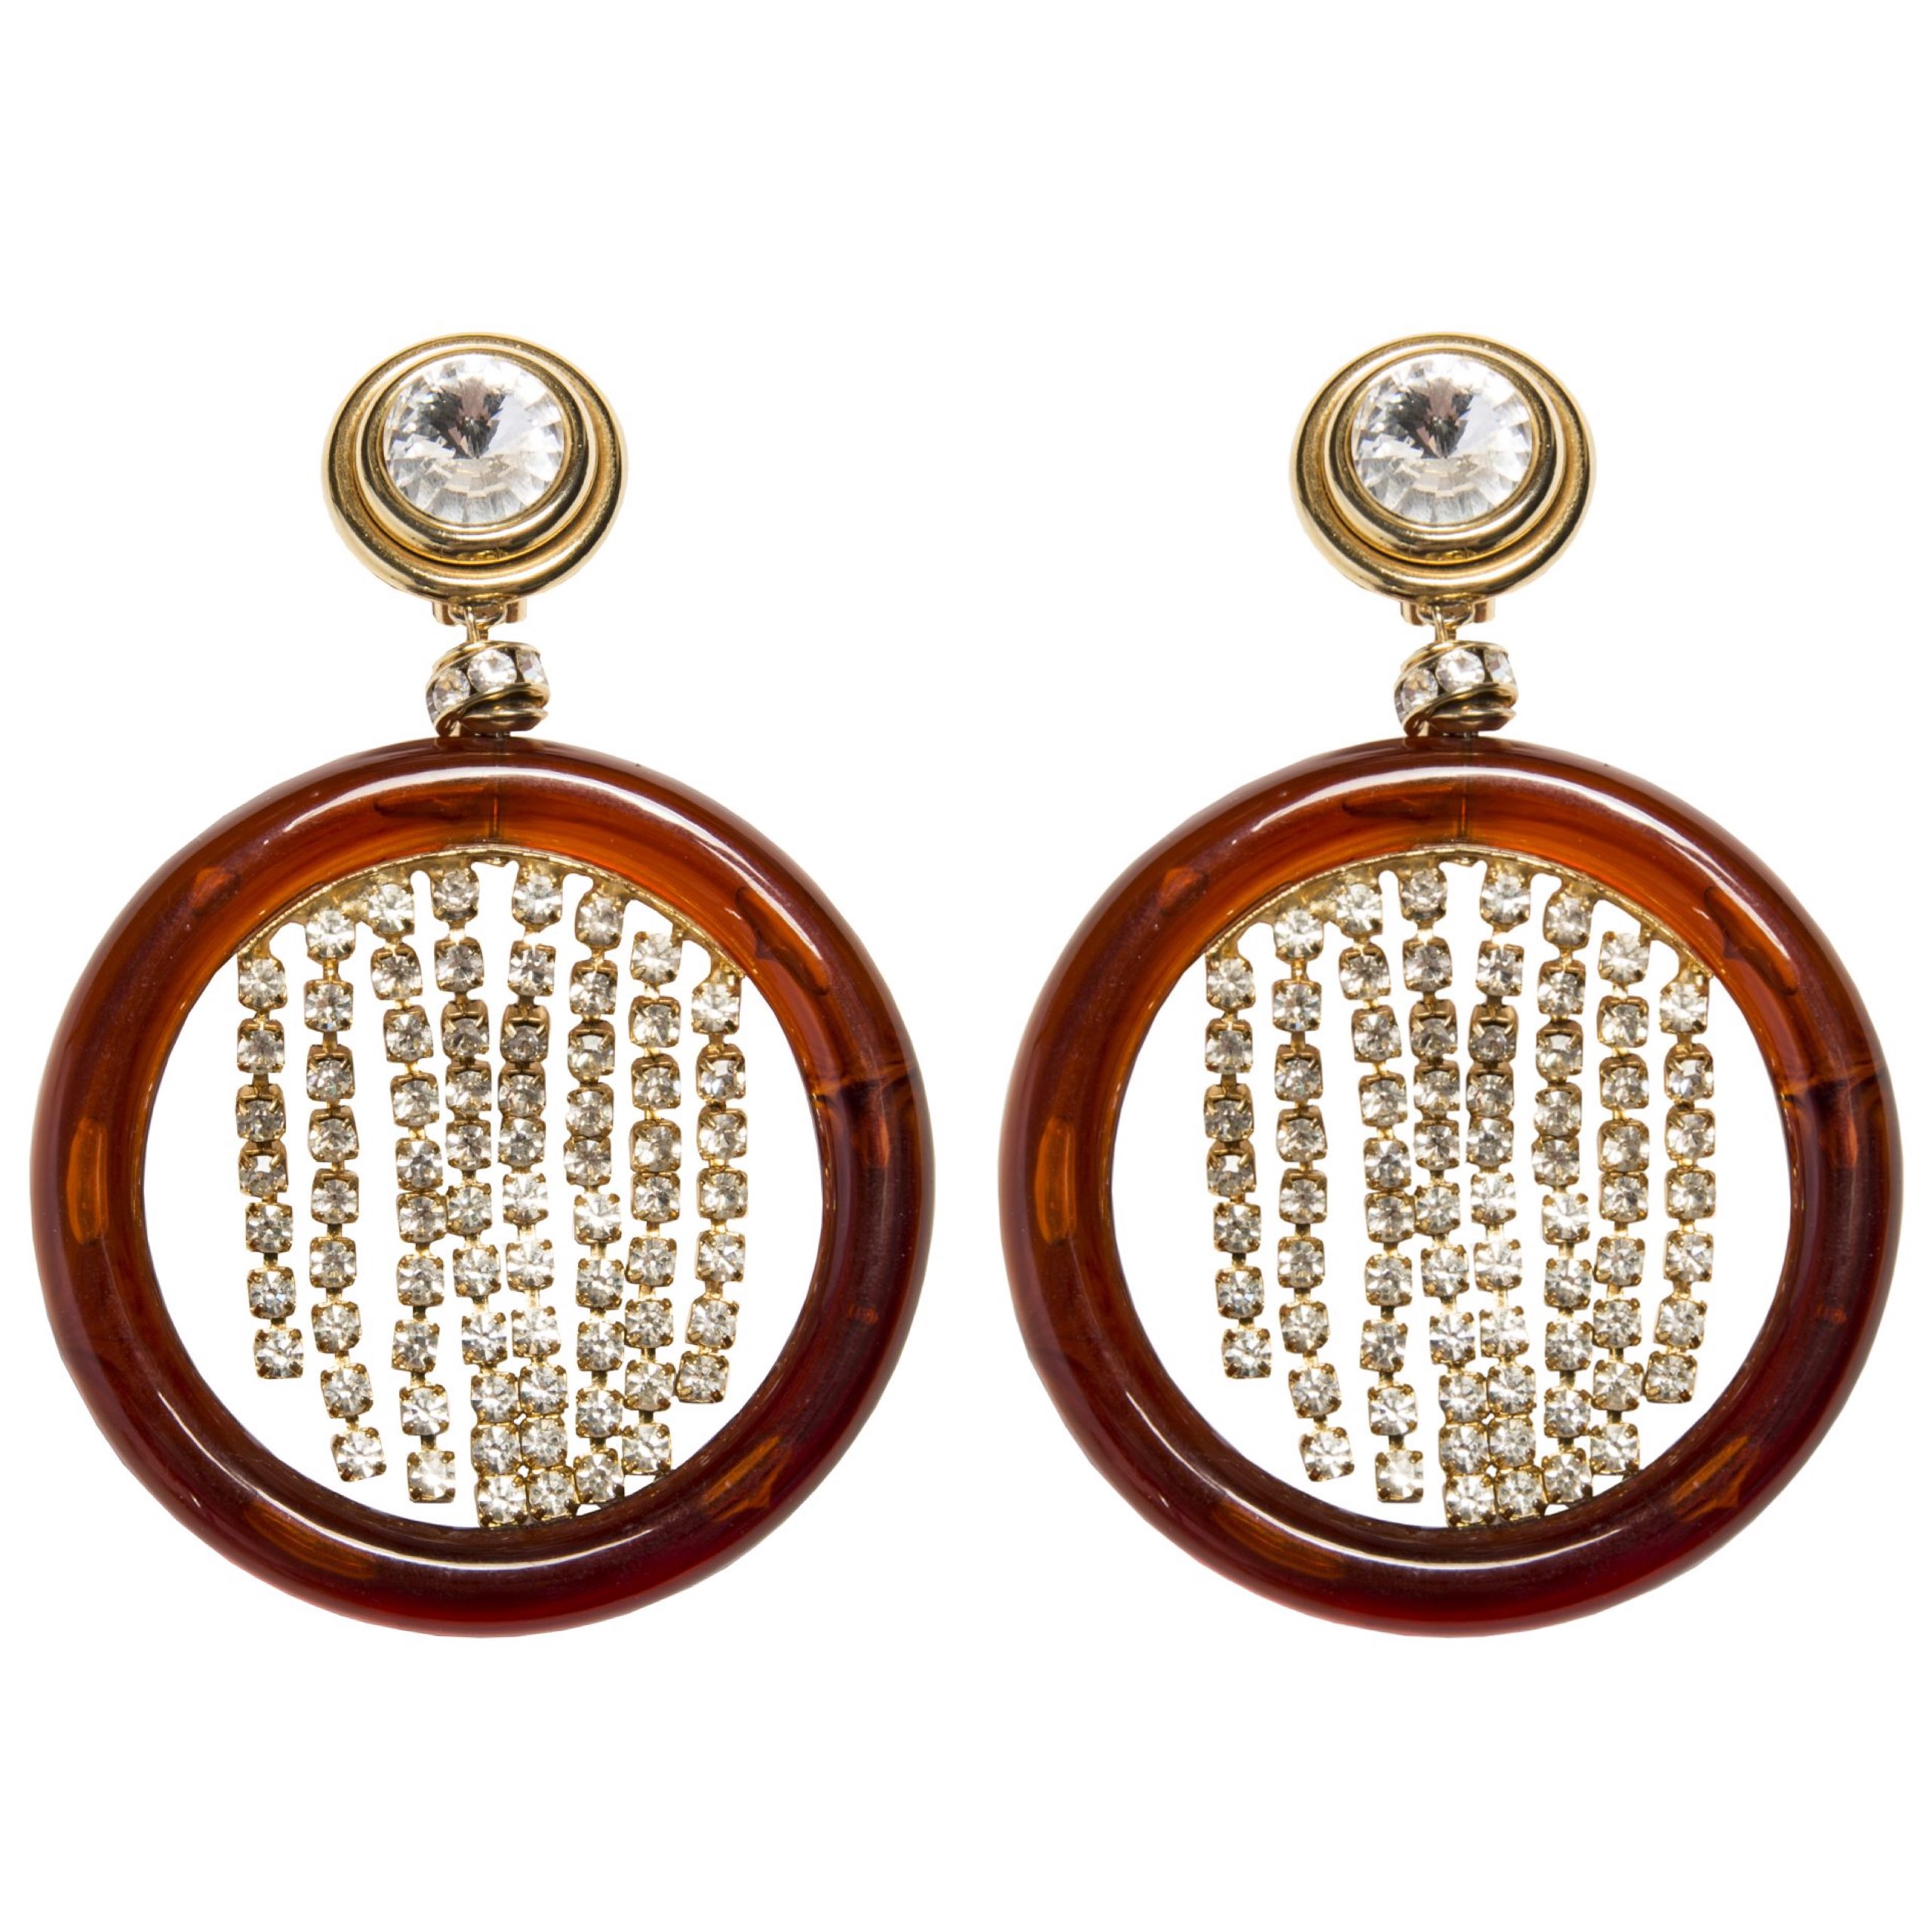 Vintage brown earrings with rhinestones